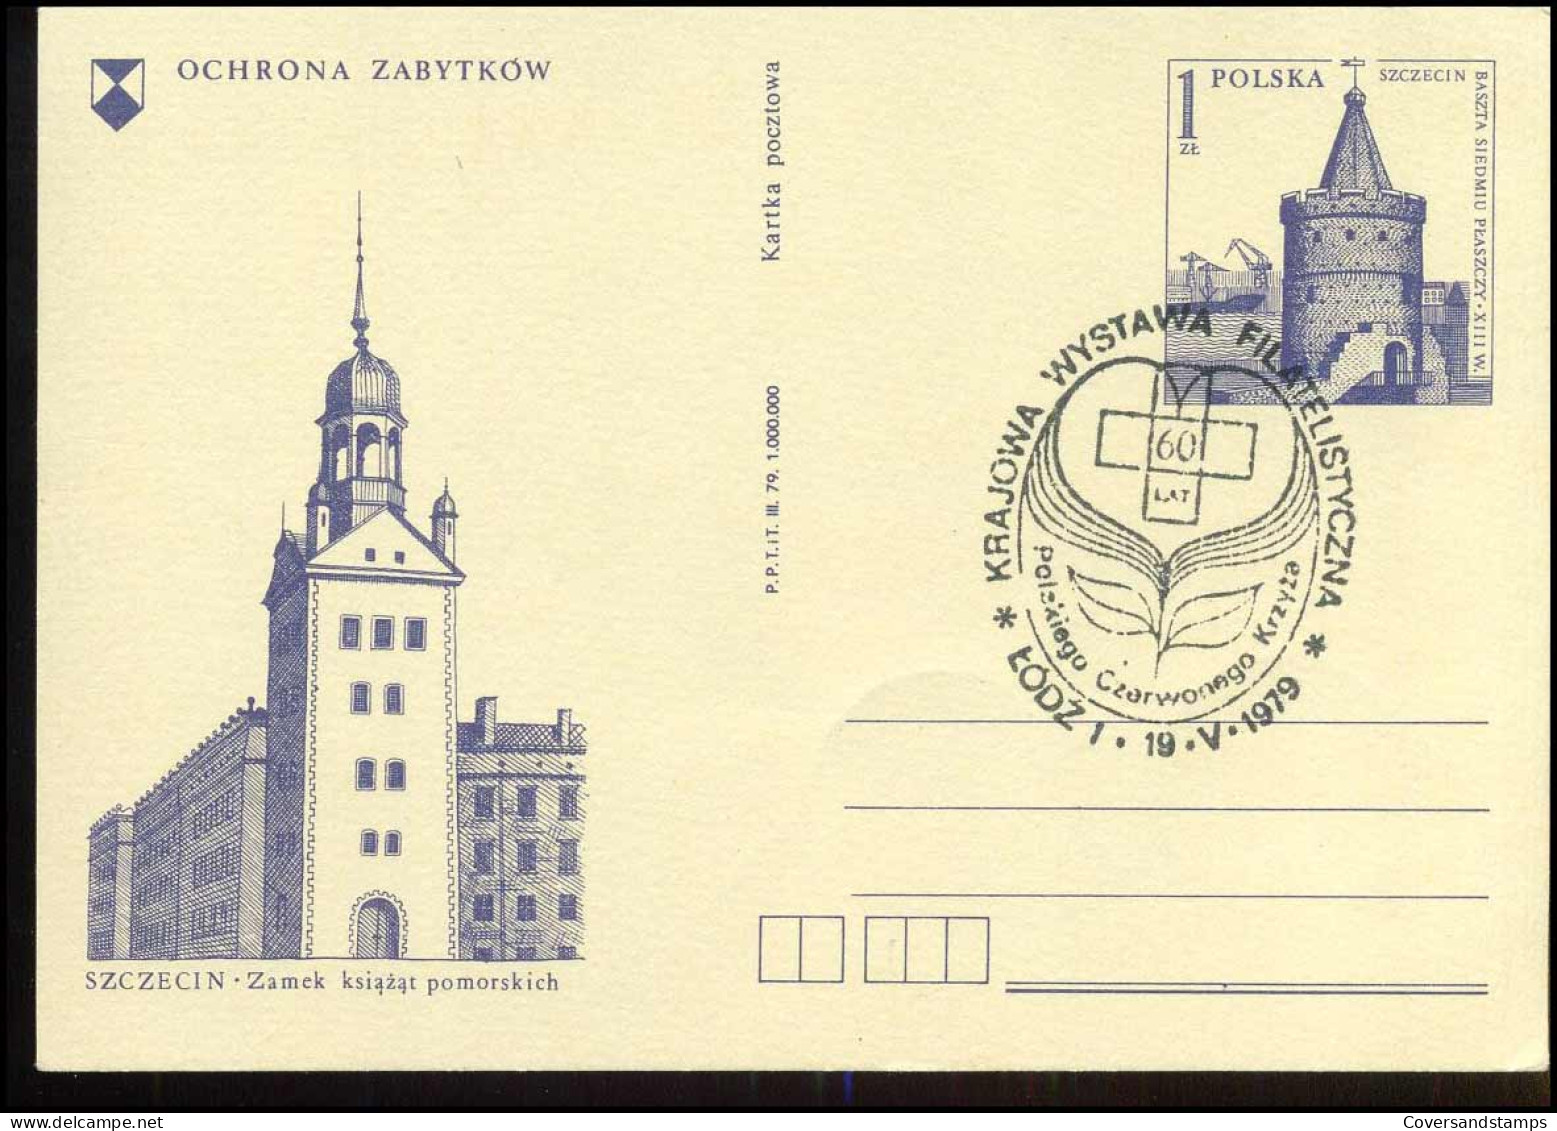 Post Card - Ochrona Zabytkow - Stamped Stationery